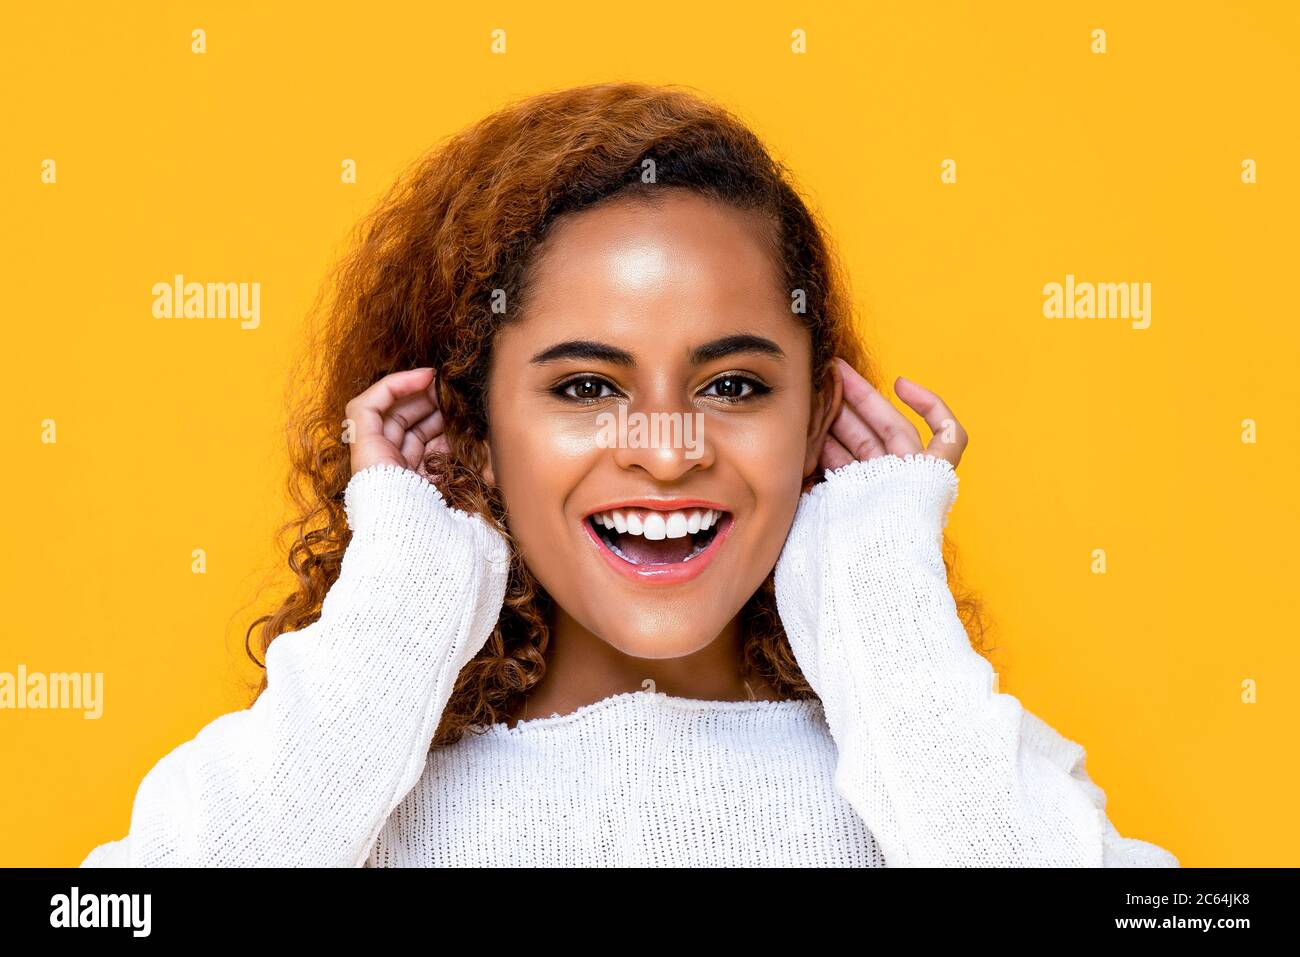 Nahaufnahme Porträt einer fröhlichen jungen afroamerikanischen Frau lächeln, während sie ihre Ohren mit beiden Händen in isolierten Studio gelben Hintergrund berühren Stockfoto